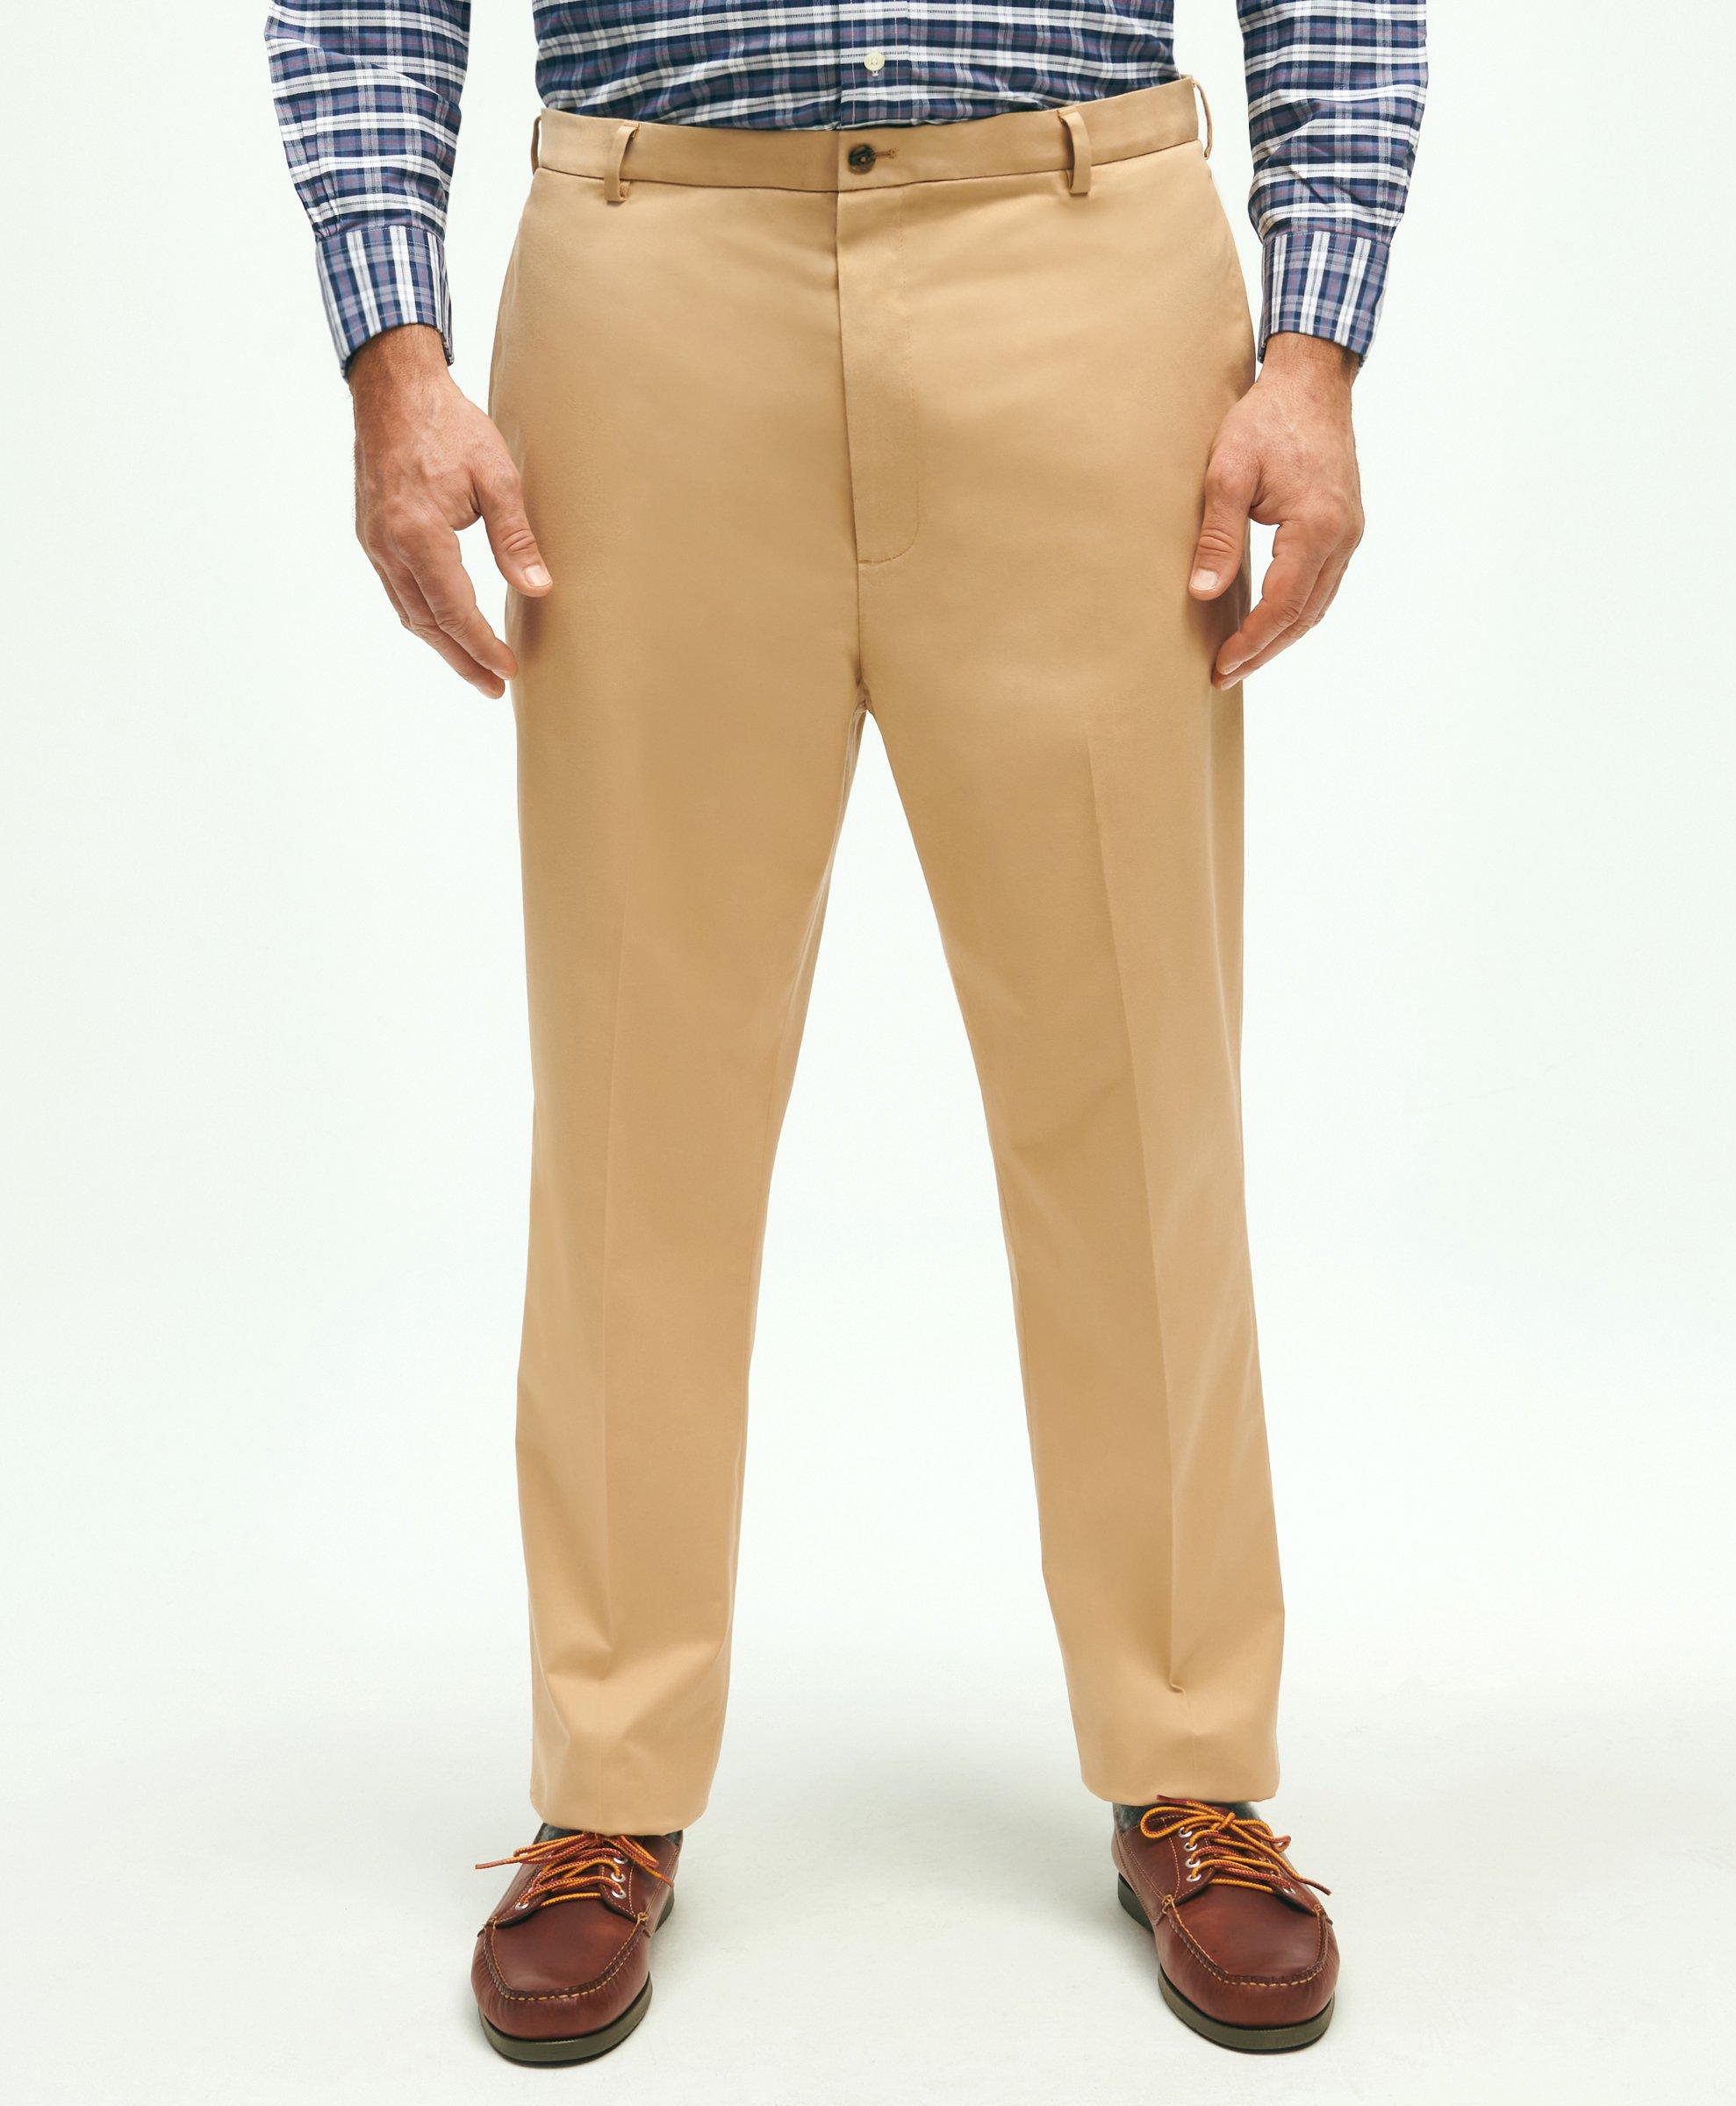 Big & Tall Stretch Advantage Chino® Pants, image 1